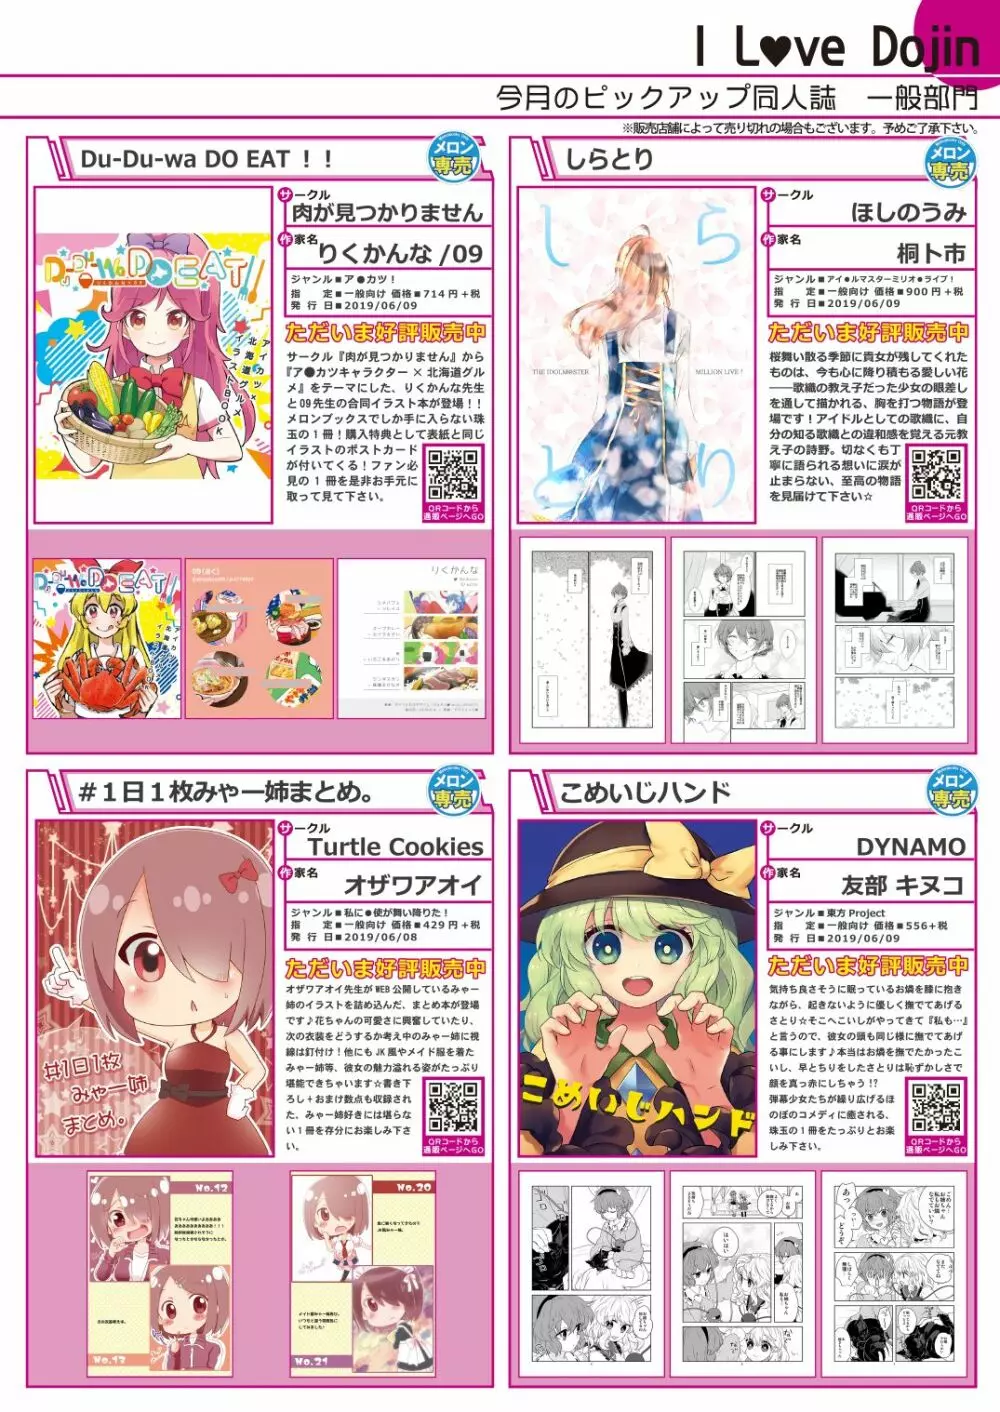 月刊うりぼうざっか店 2019年7月5日発行号 7ページ